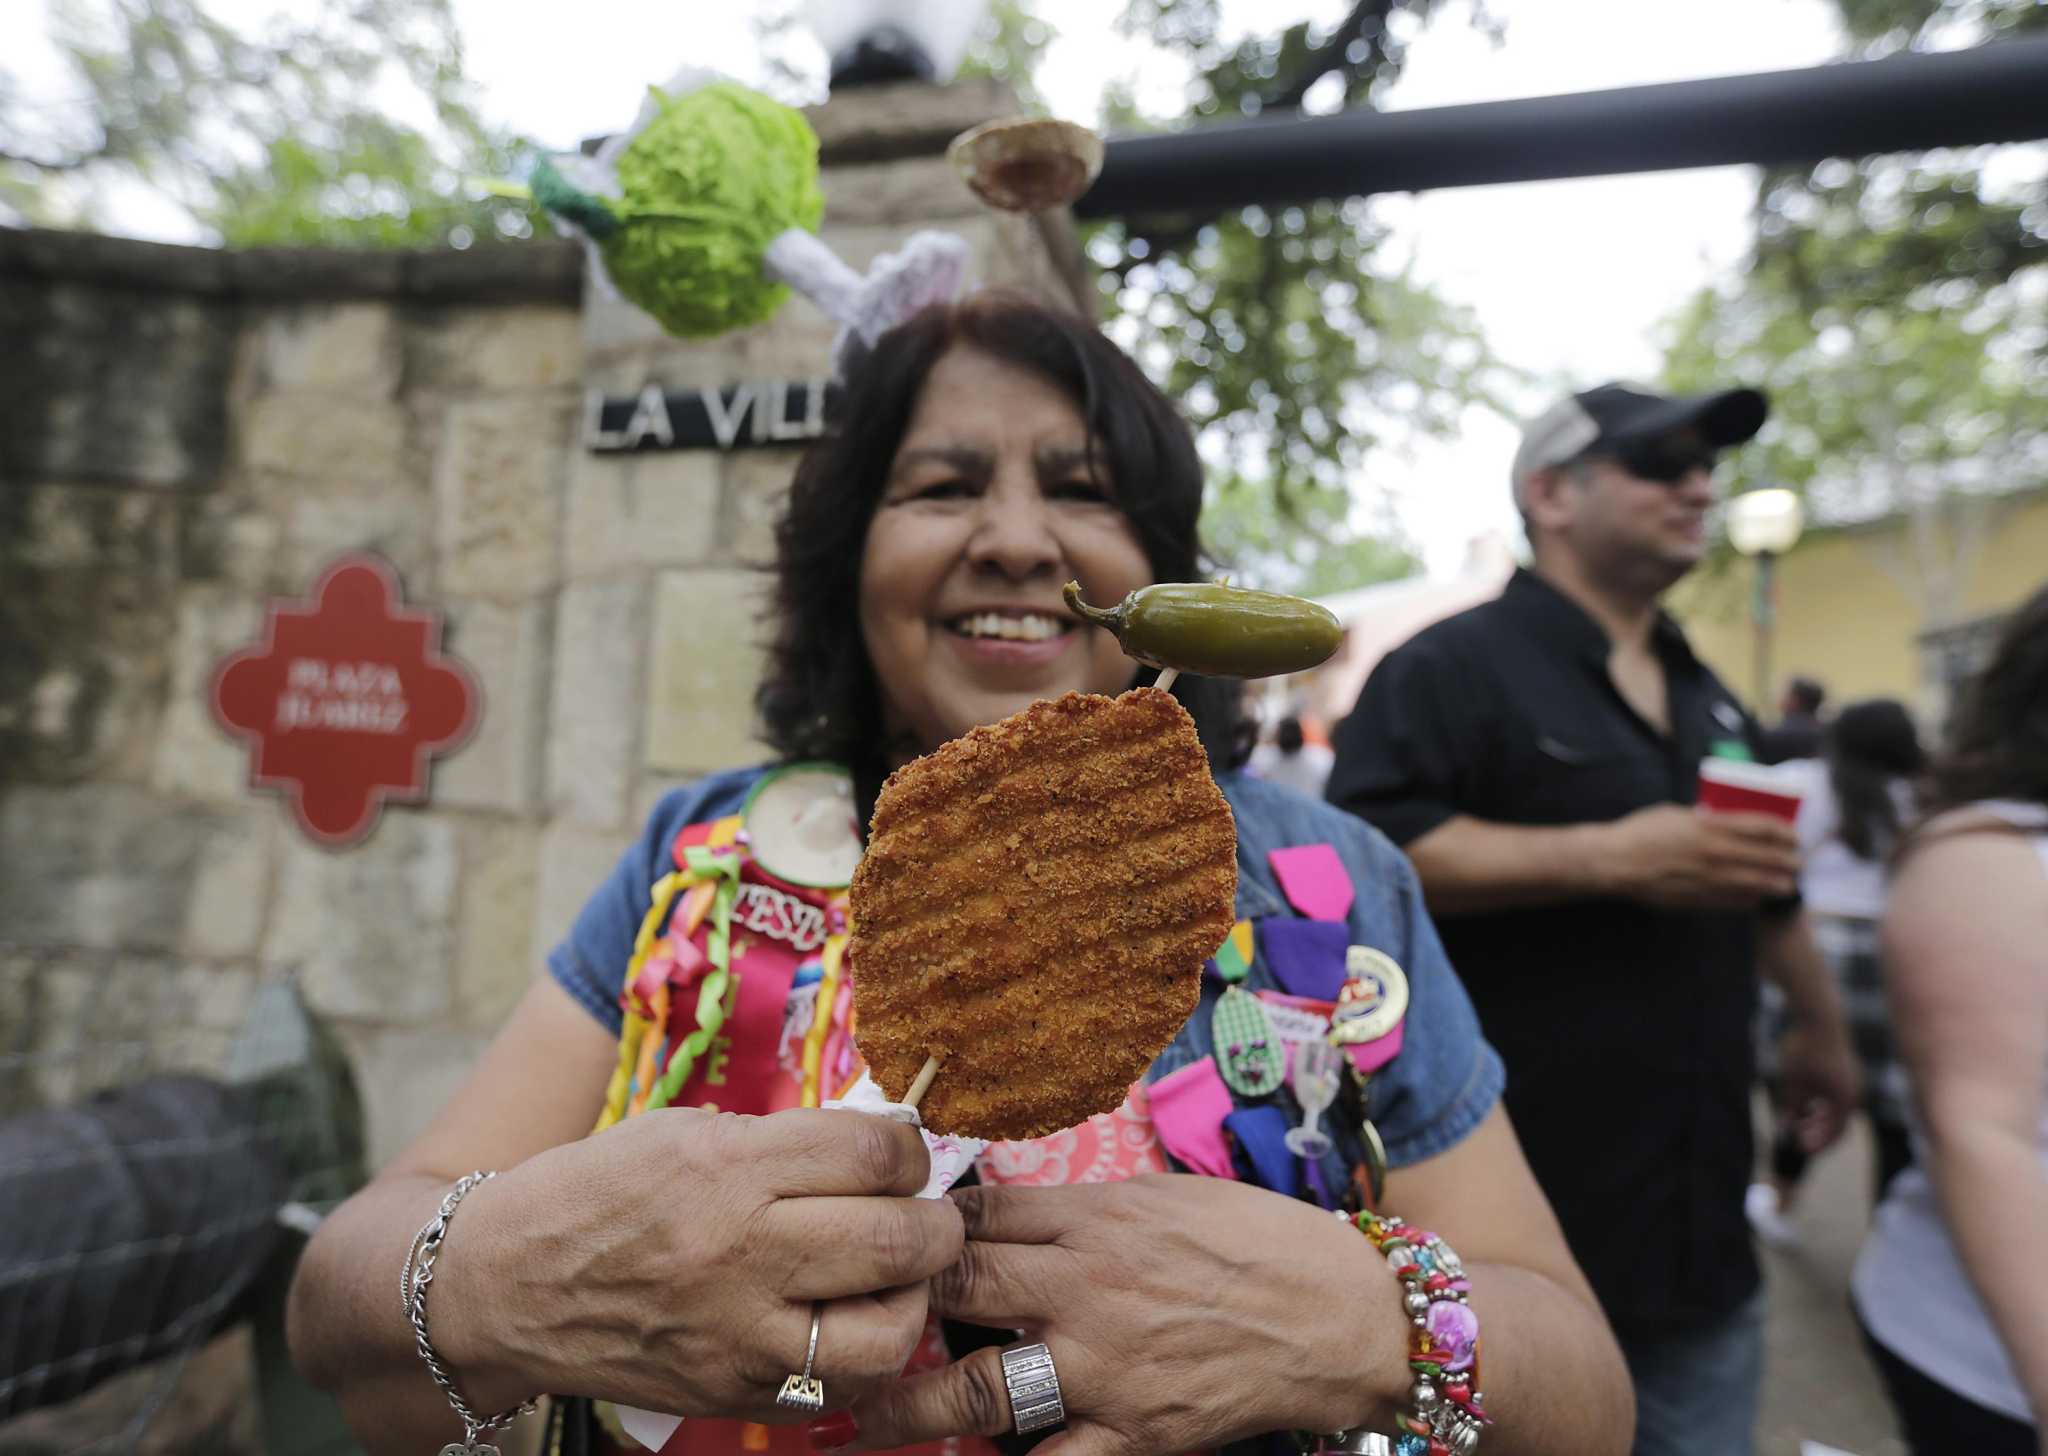 A San Antonio native's guide to surviving Fiesta